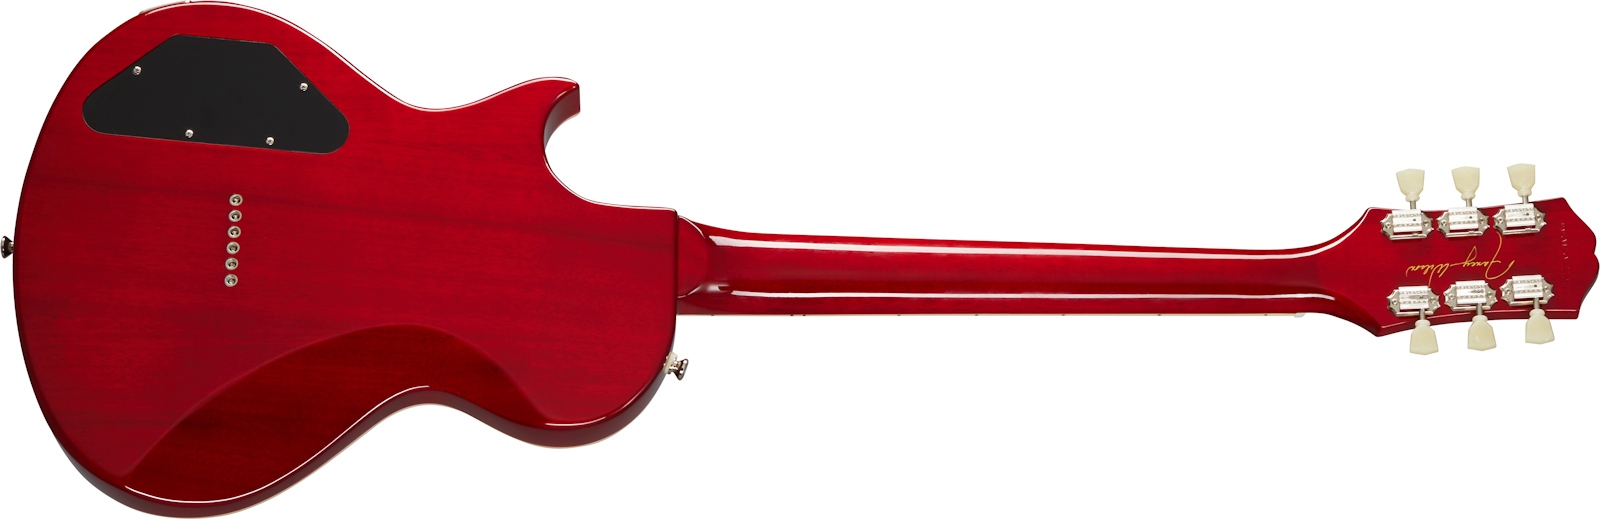 Epiphone Nancy Wilson Fanatic Signature Hmh Ht Eb - Fireburst - Guitare Électrique Single Cut - Variation 1